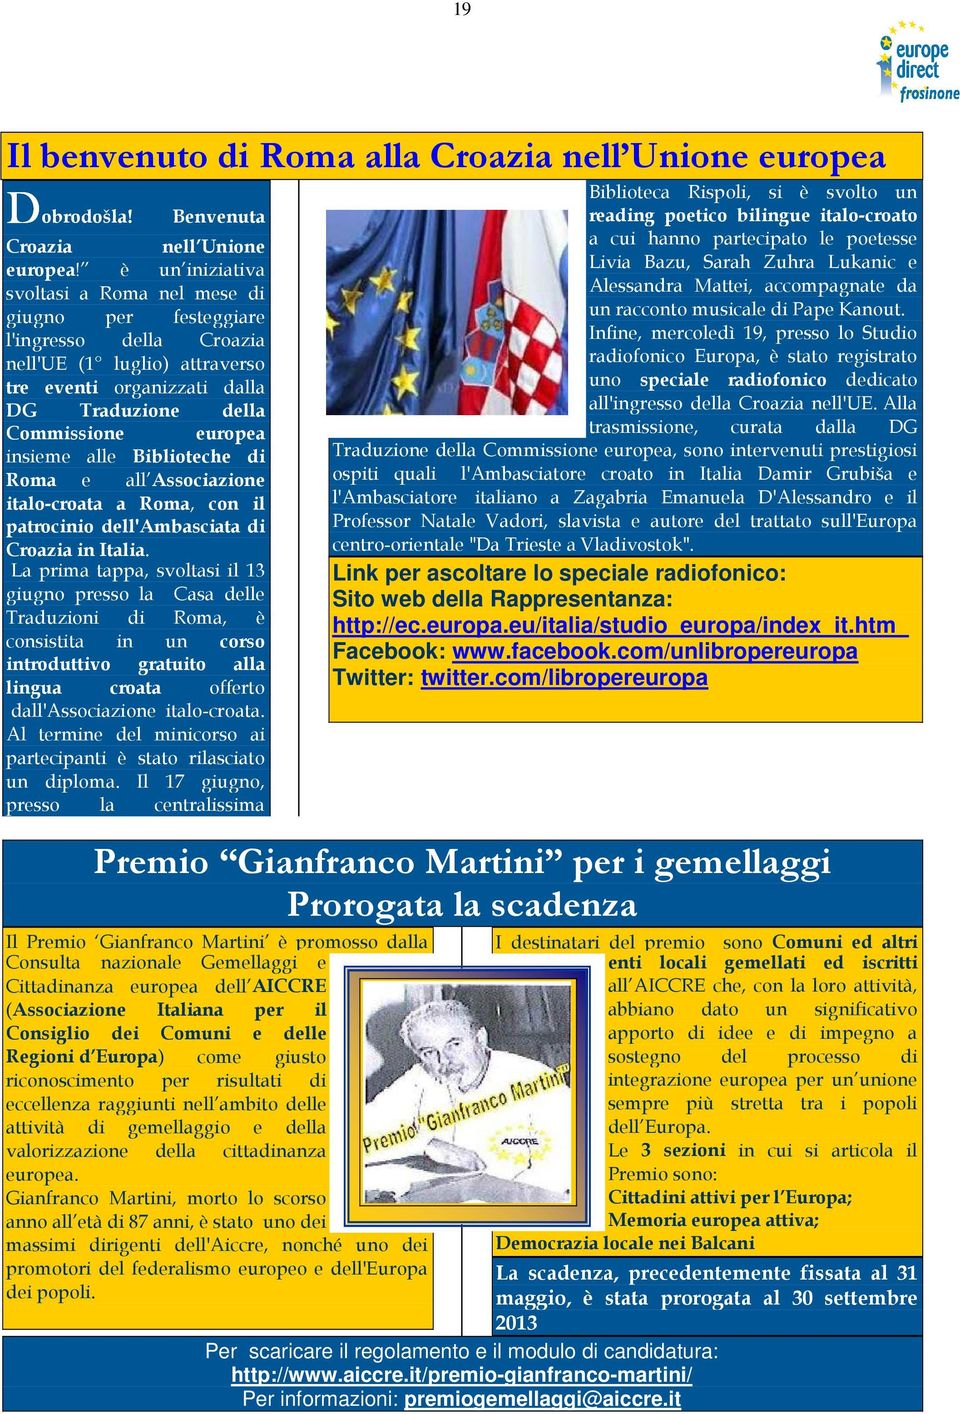 alle Biblioteche di Roma e all Associazione italo-croata a Roma, con il patrocinio dell'ambasciata di Croazia in Italia.